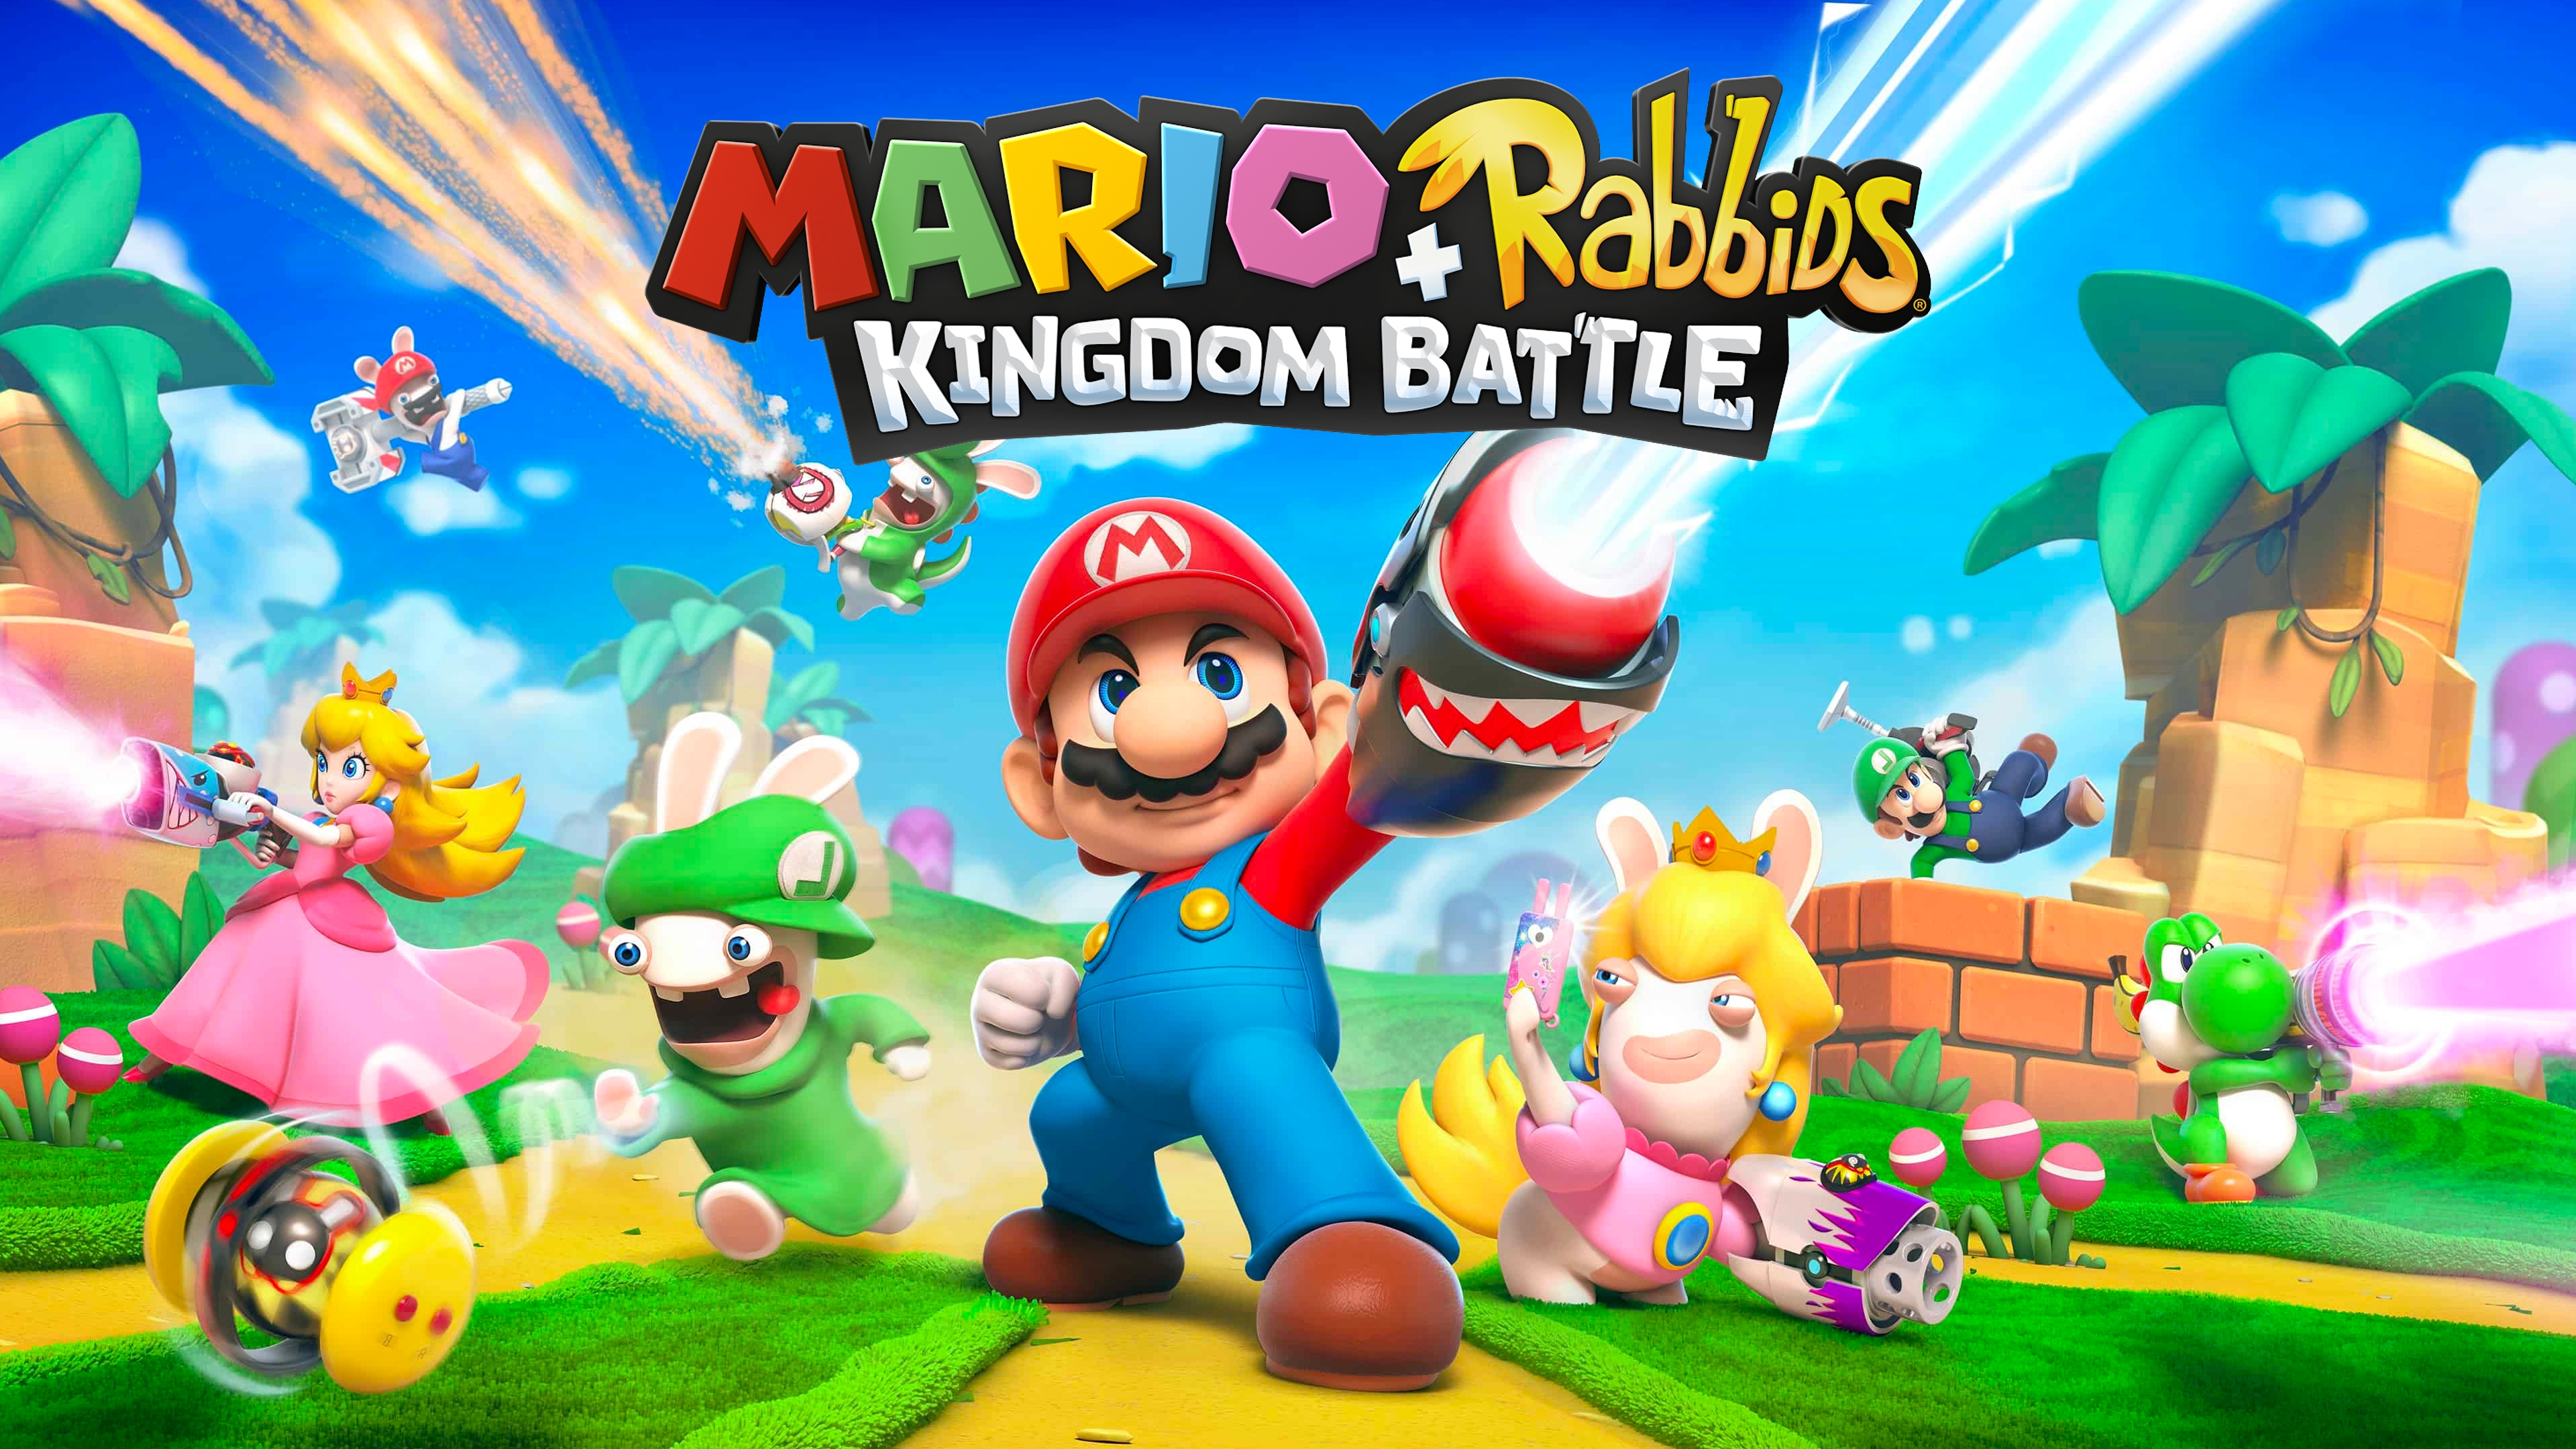 Mario + The Lapins Crétins: kingdom battle - Jeux Switch